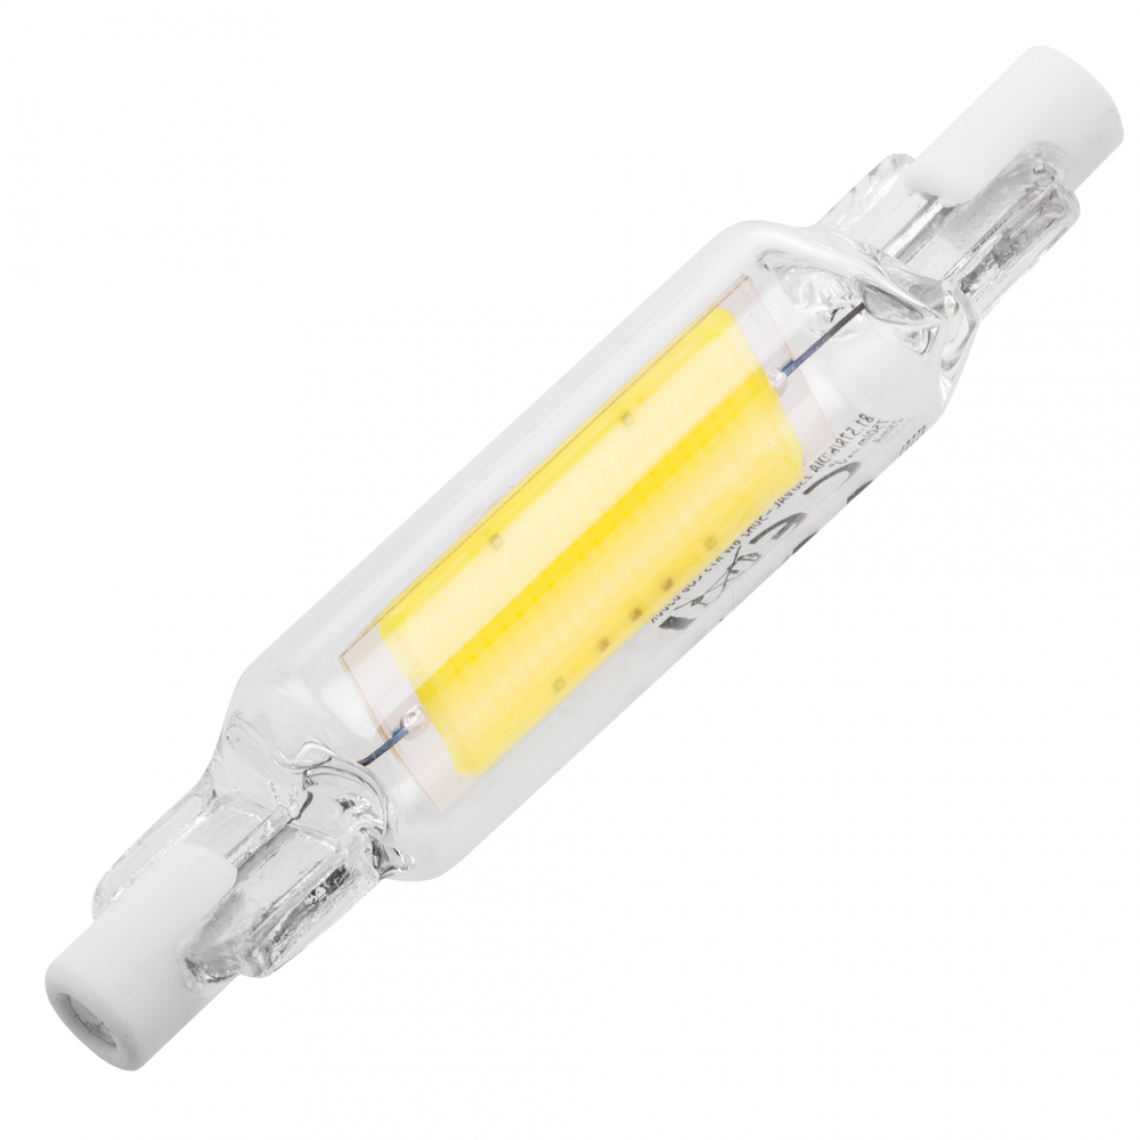 Bematik - Ampoule LED R7S 230VAC 6W blanc froid 6500K - Tubes et néons